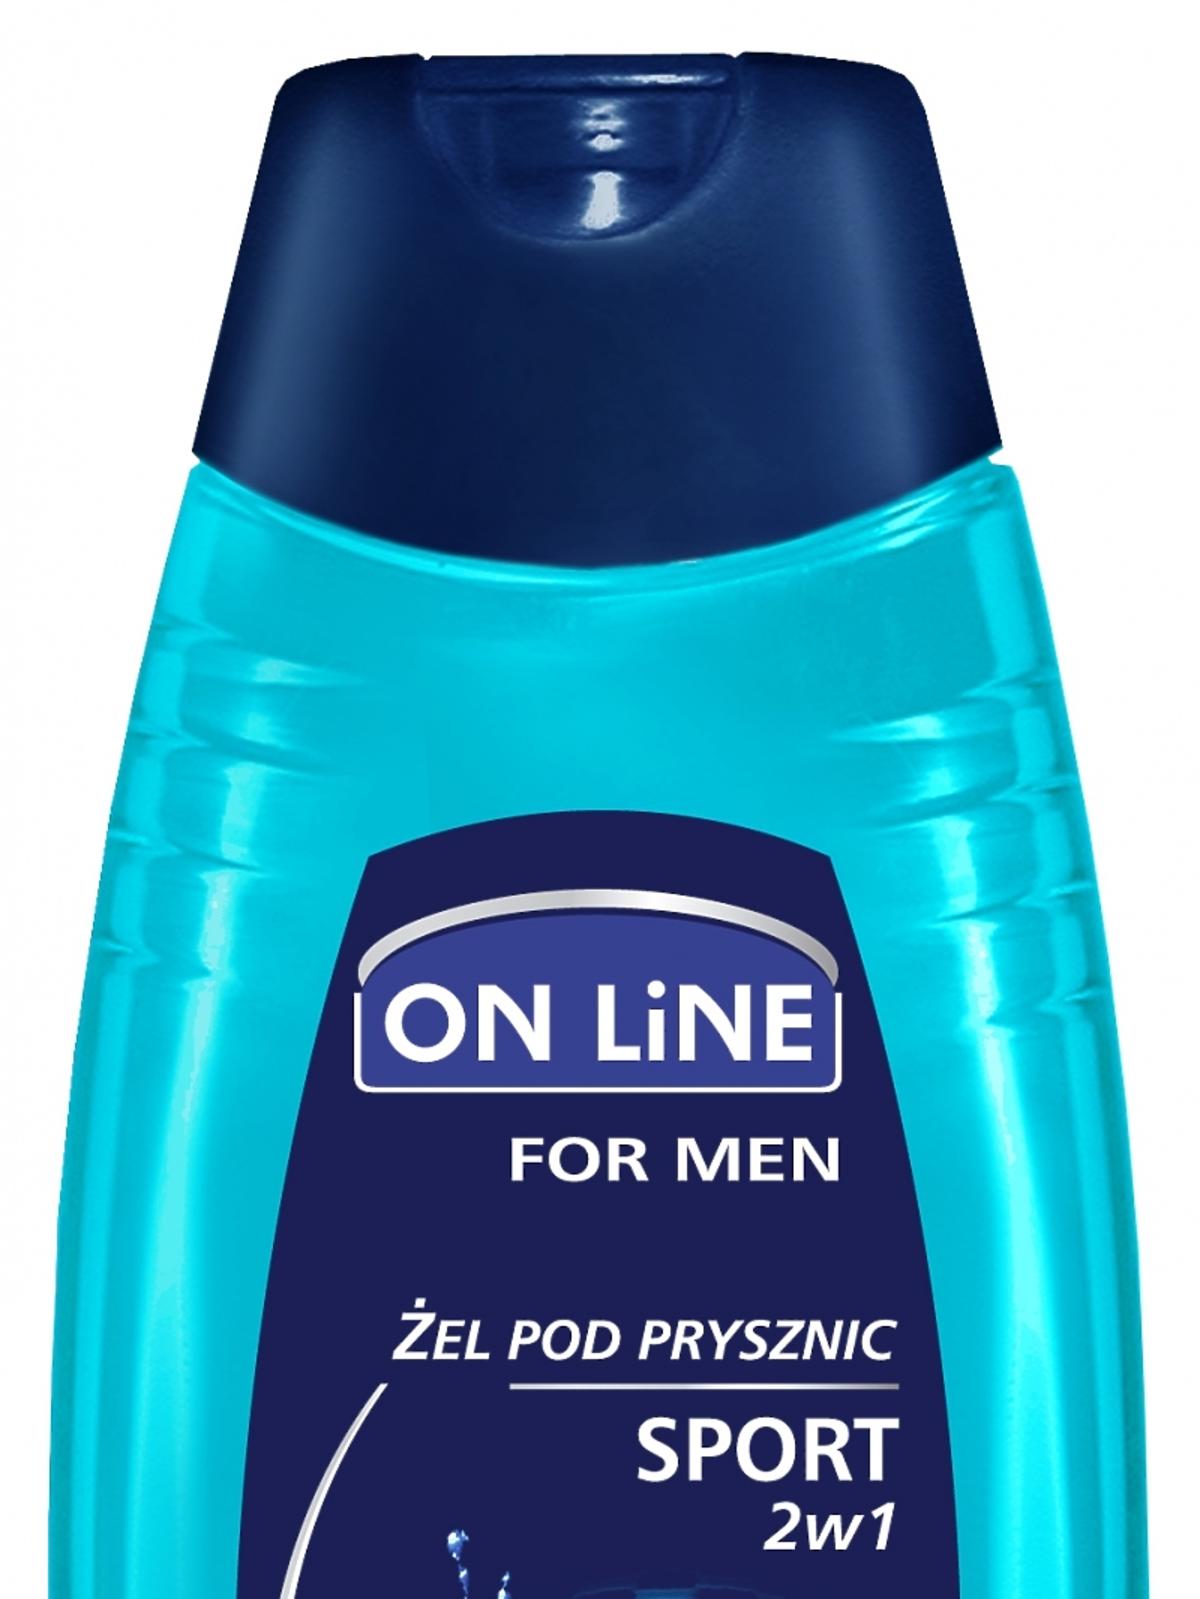 On Line żel pod prysznic dla mężczyzn Sport 2w1 kopia.jpg